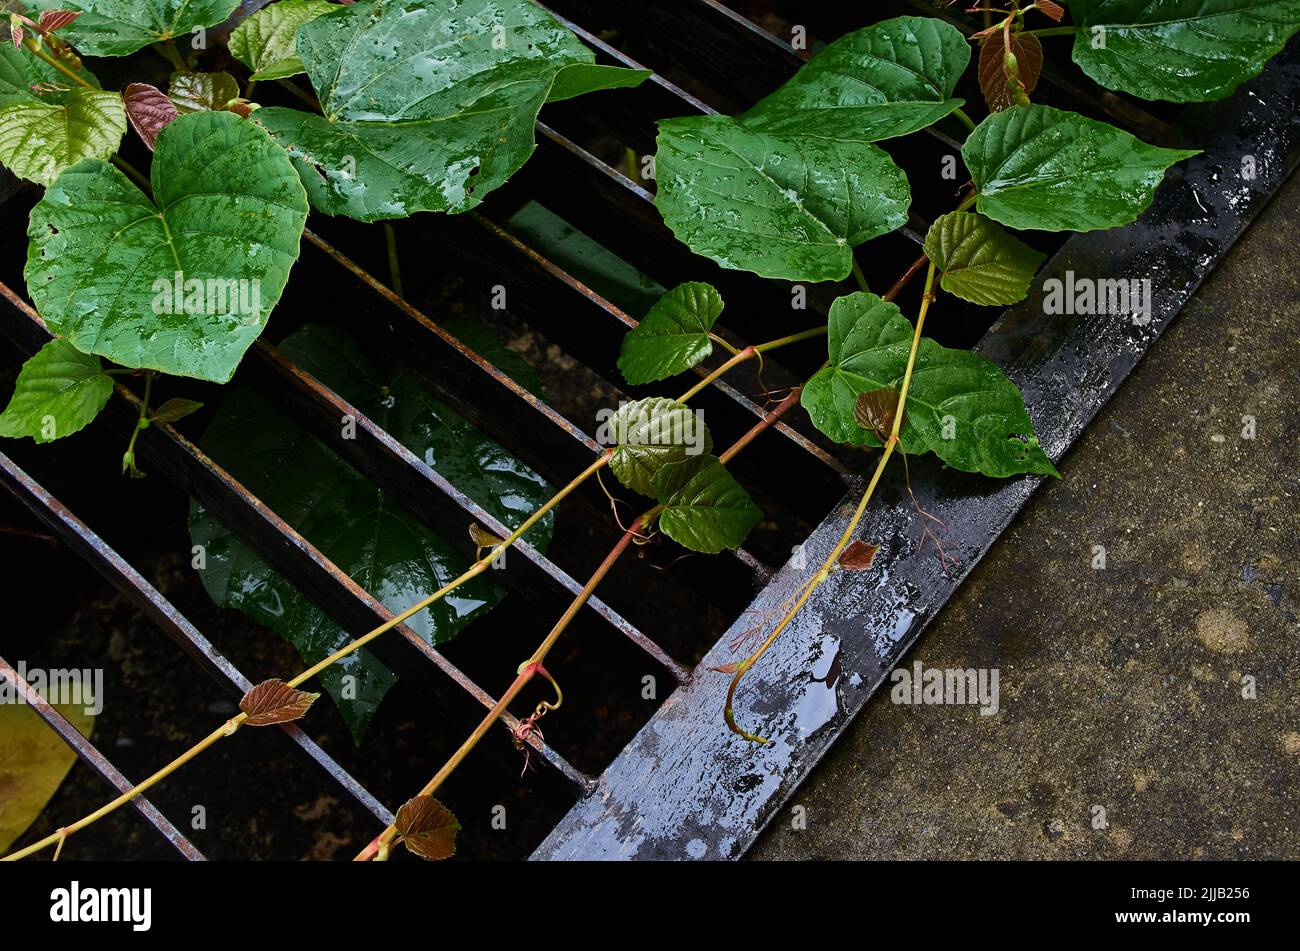 Las hojas y la vid en la rejilla metálica de la canaleta de drenaje Foto de stock